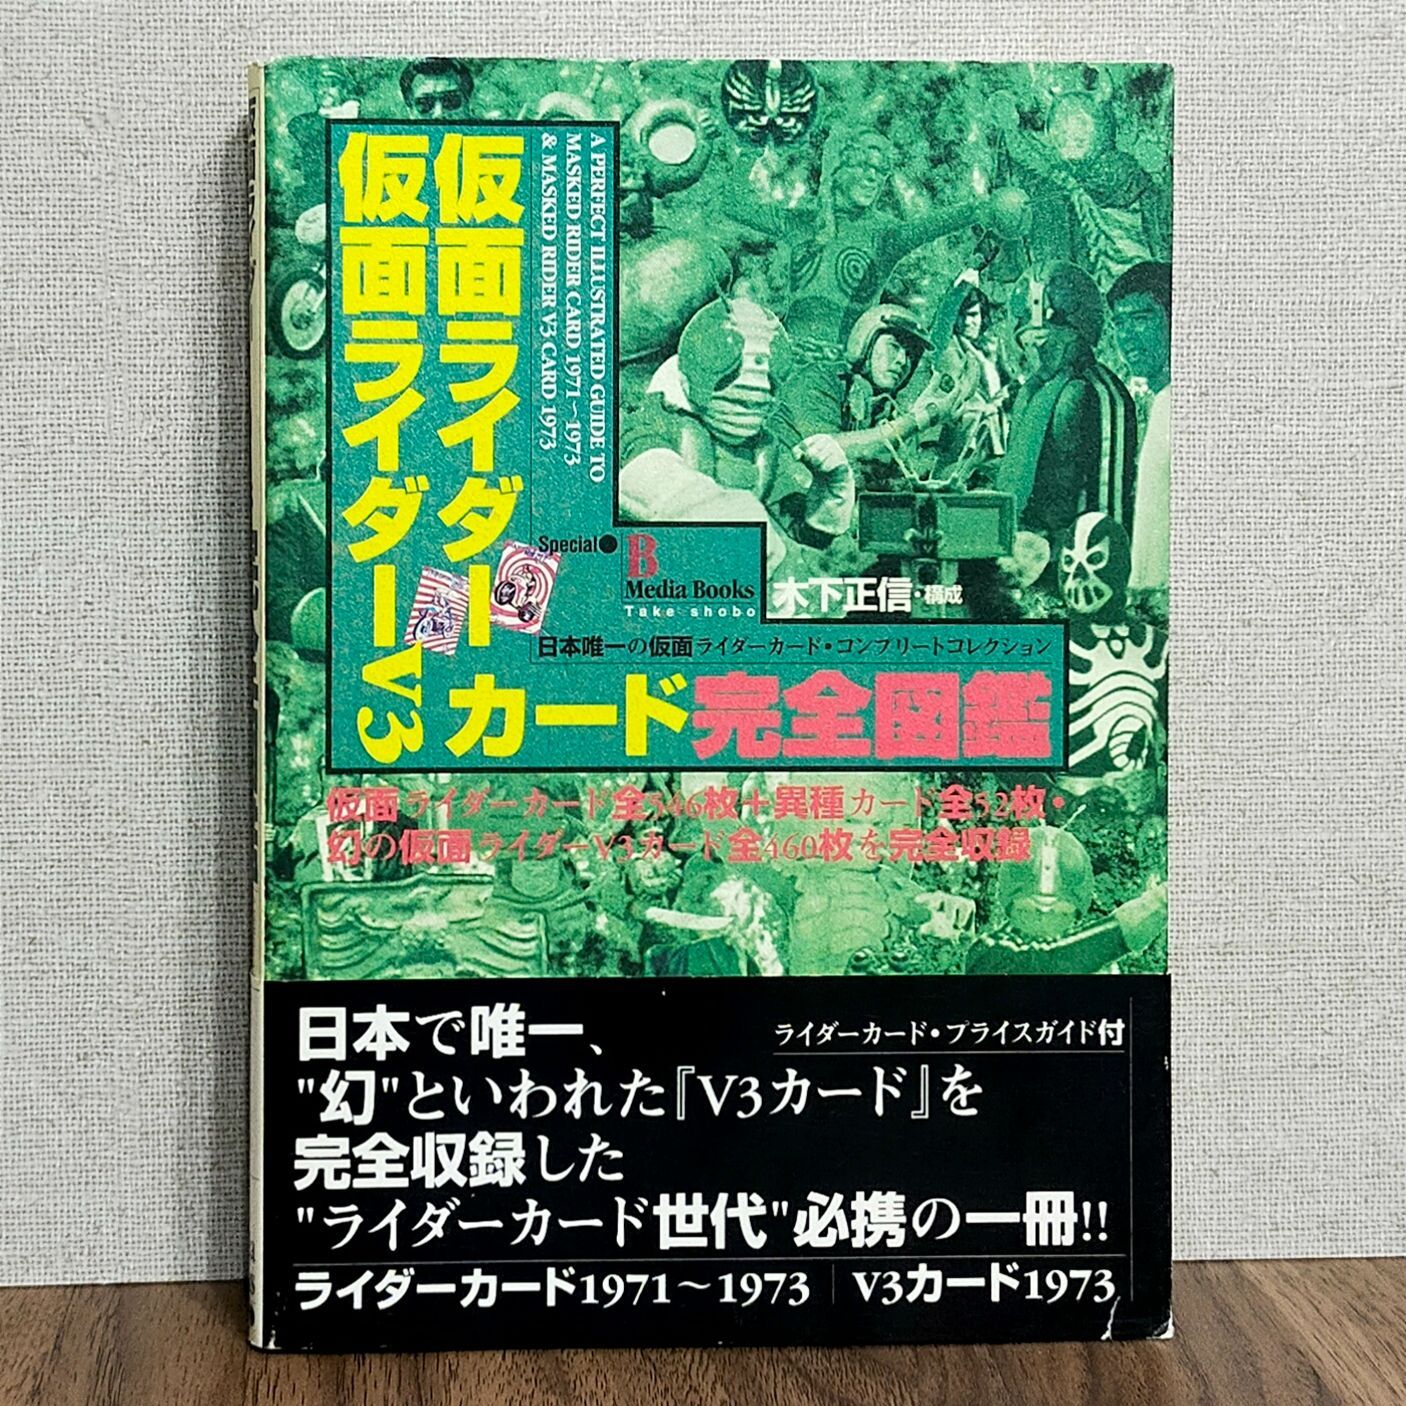 仮面ライダー・仮面ライダーV3カード 完全図鑑 - わんわんブックス☆2